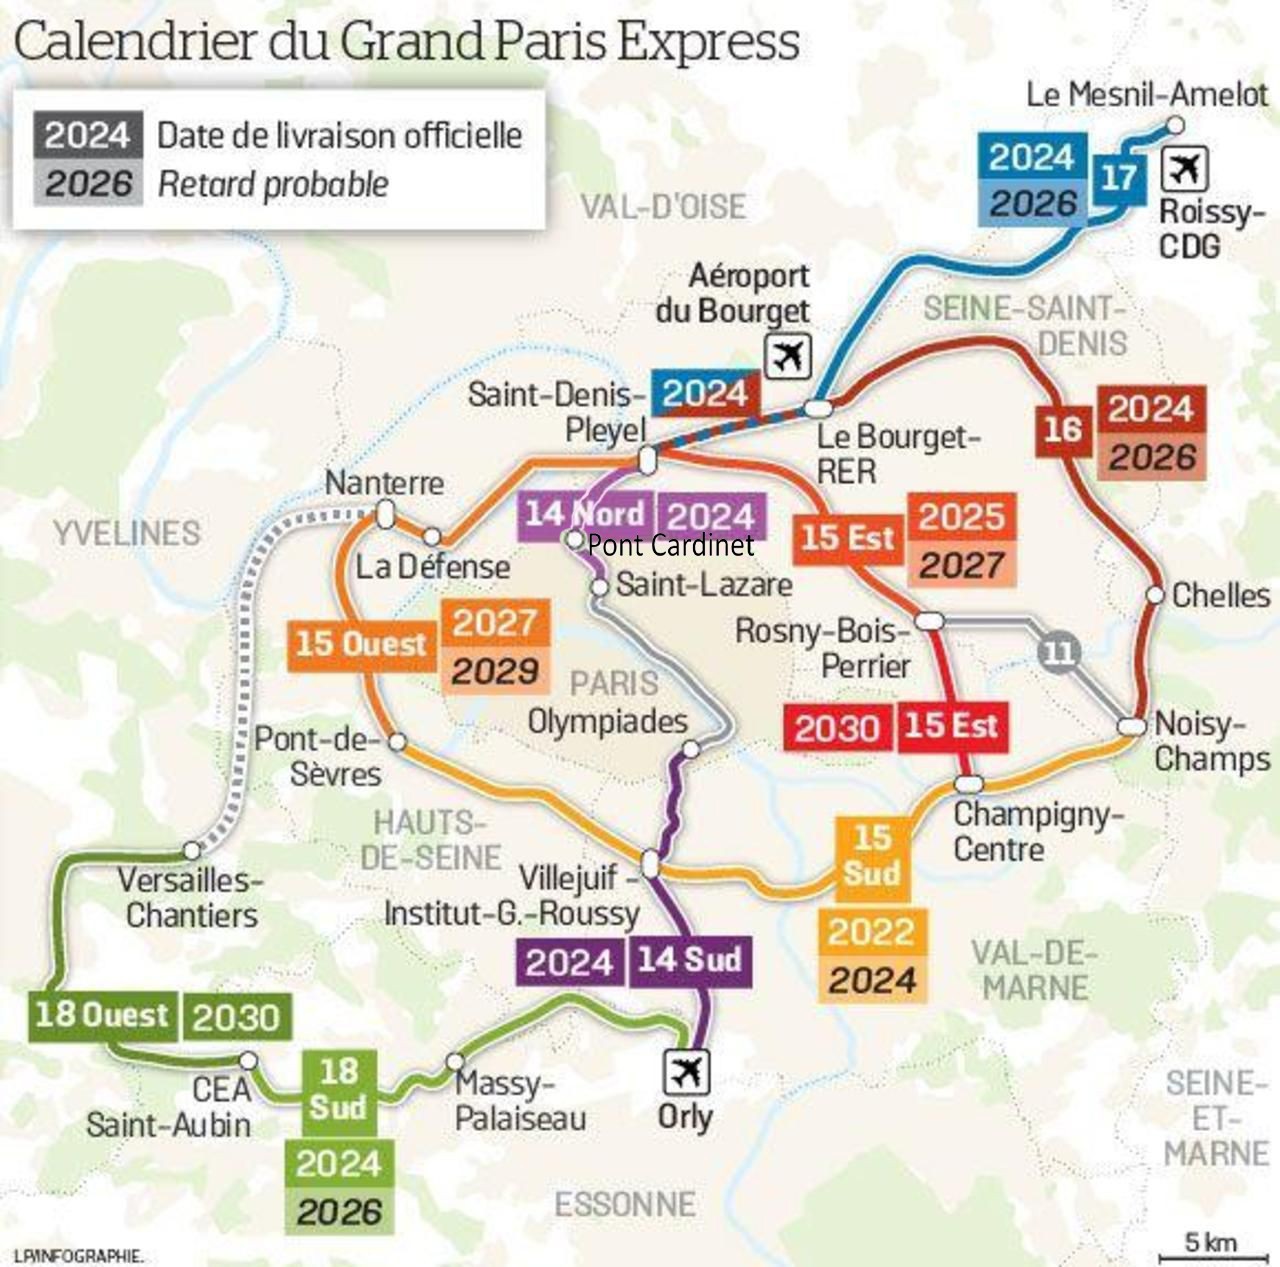 Les diffrentes lignes du Grand Paris Express